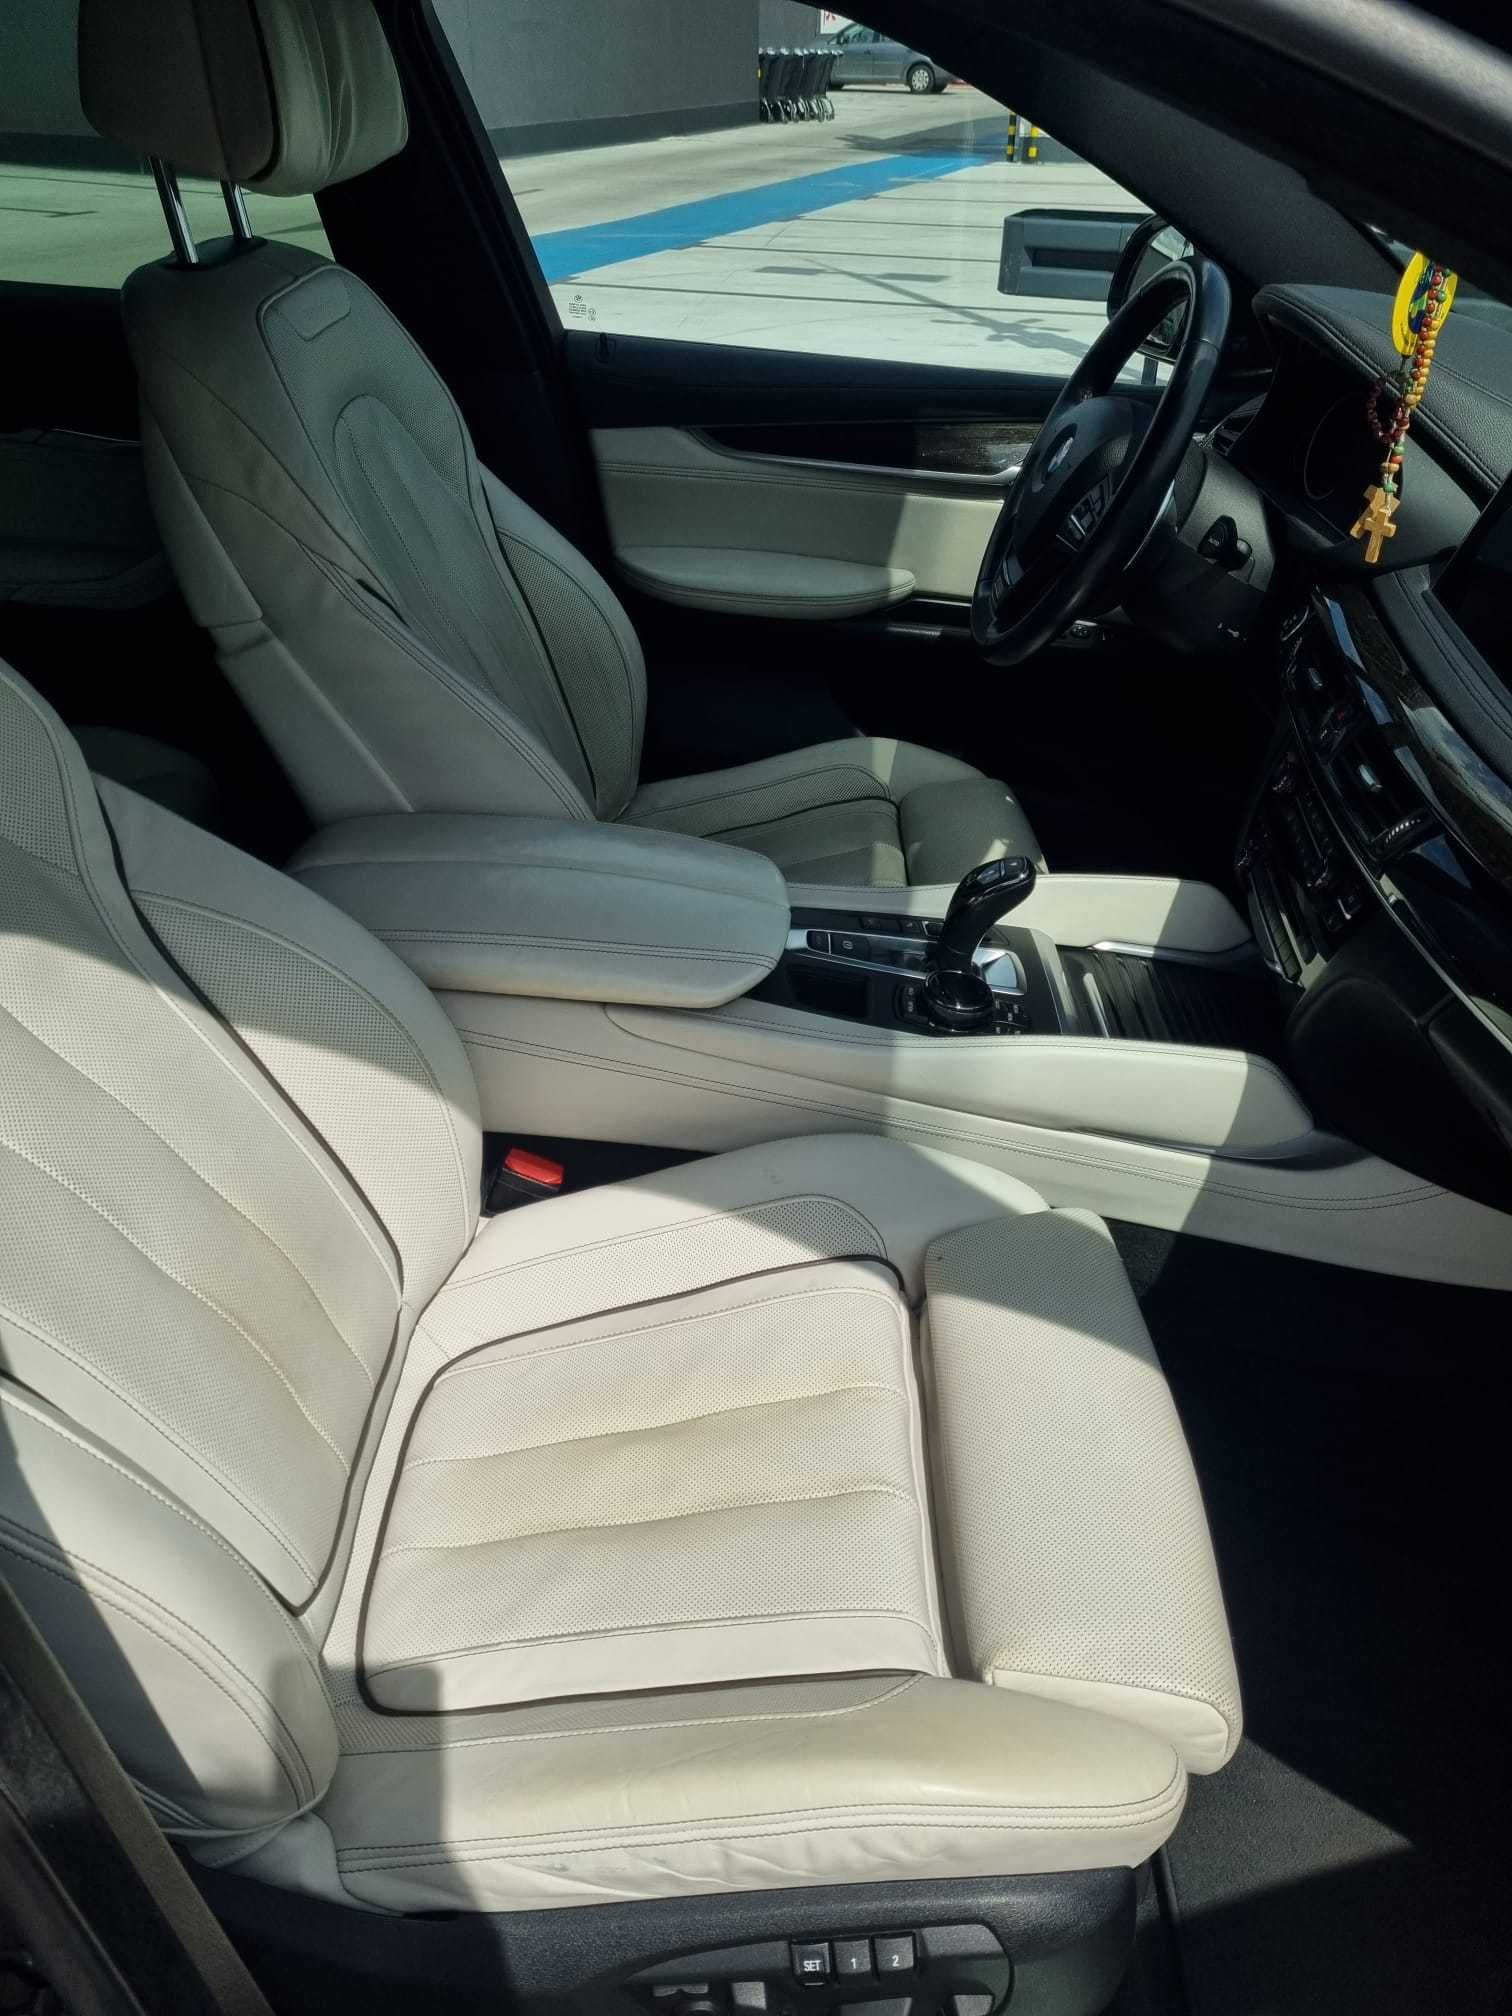 BMW x6  xDrive 3.0d koniec XII 2015 Salon Polska model 2016